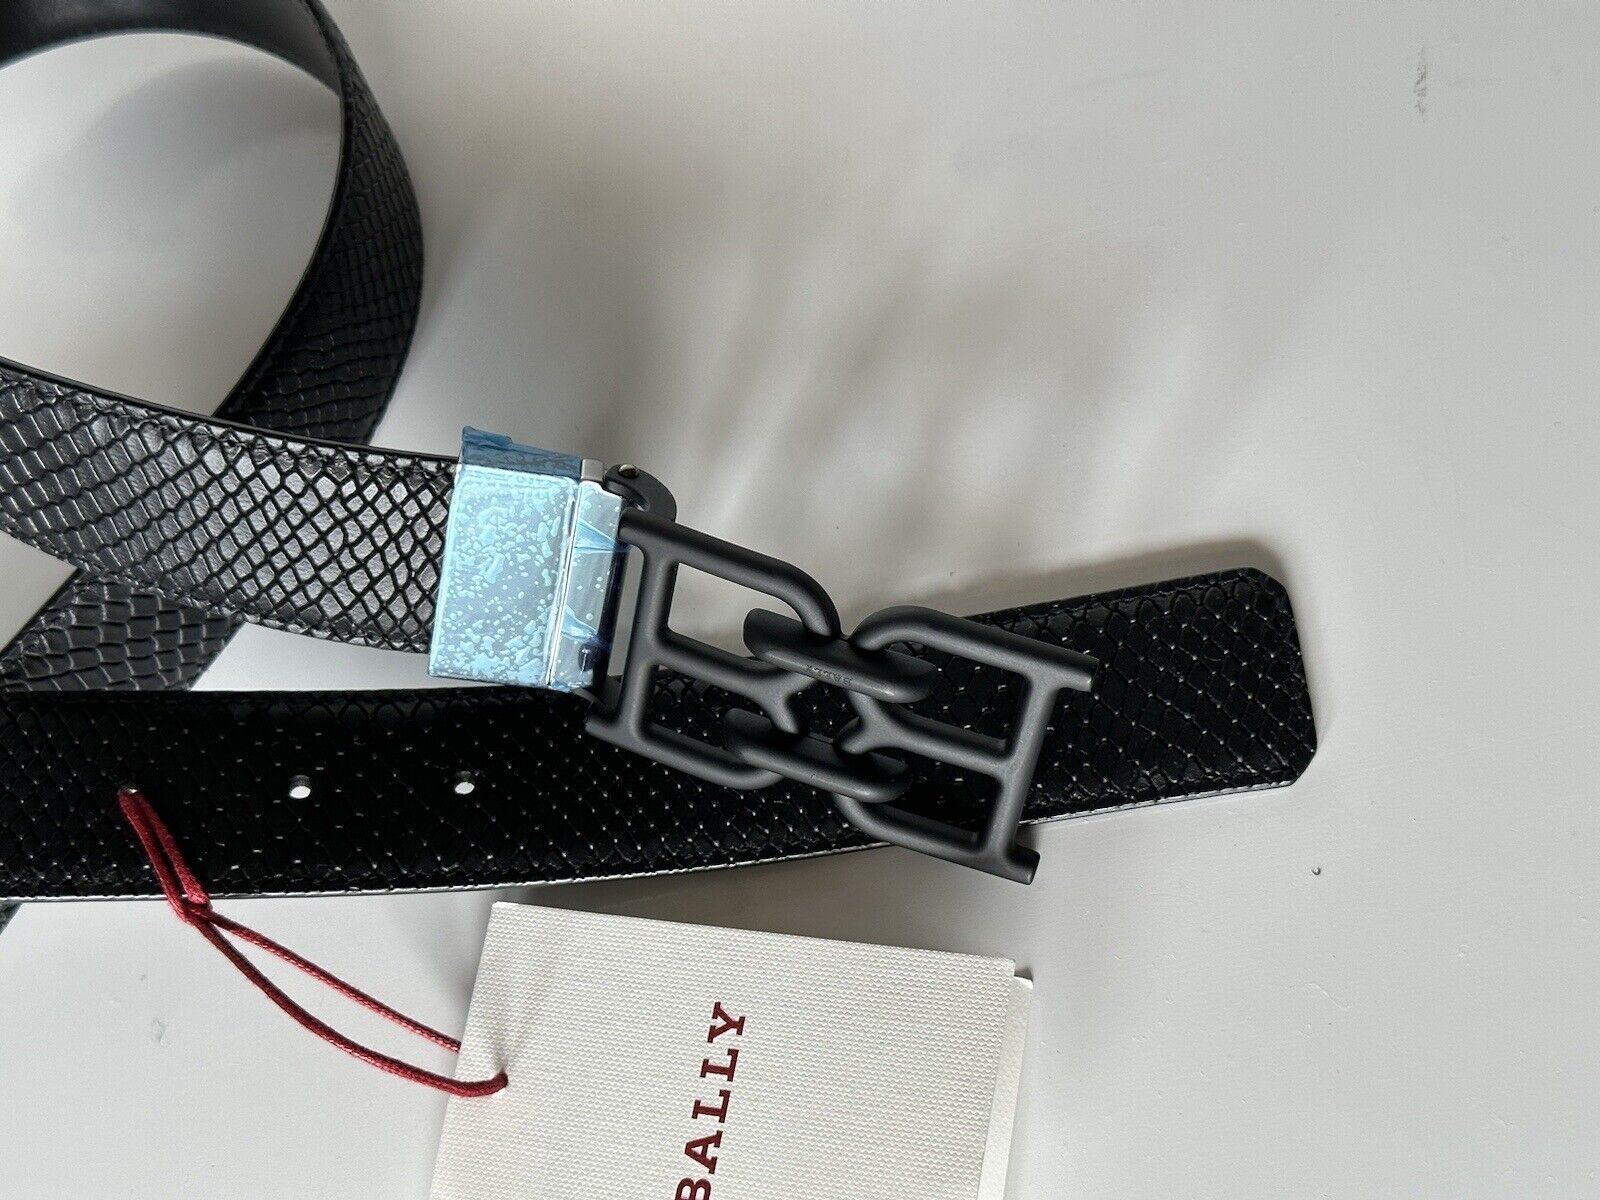 Neu mit Etikett: 450 $ Bally Herren-Gürtel mit doppelseitiger B-Kette in Schwarz, 44/110, hergestellt in Italien 